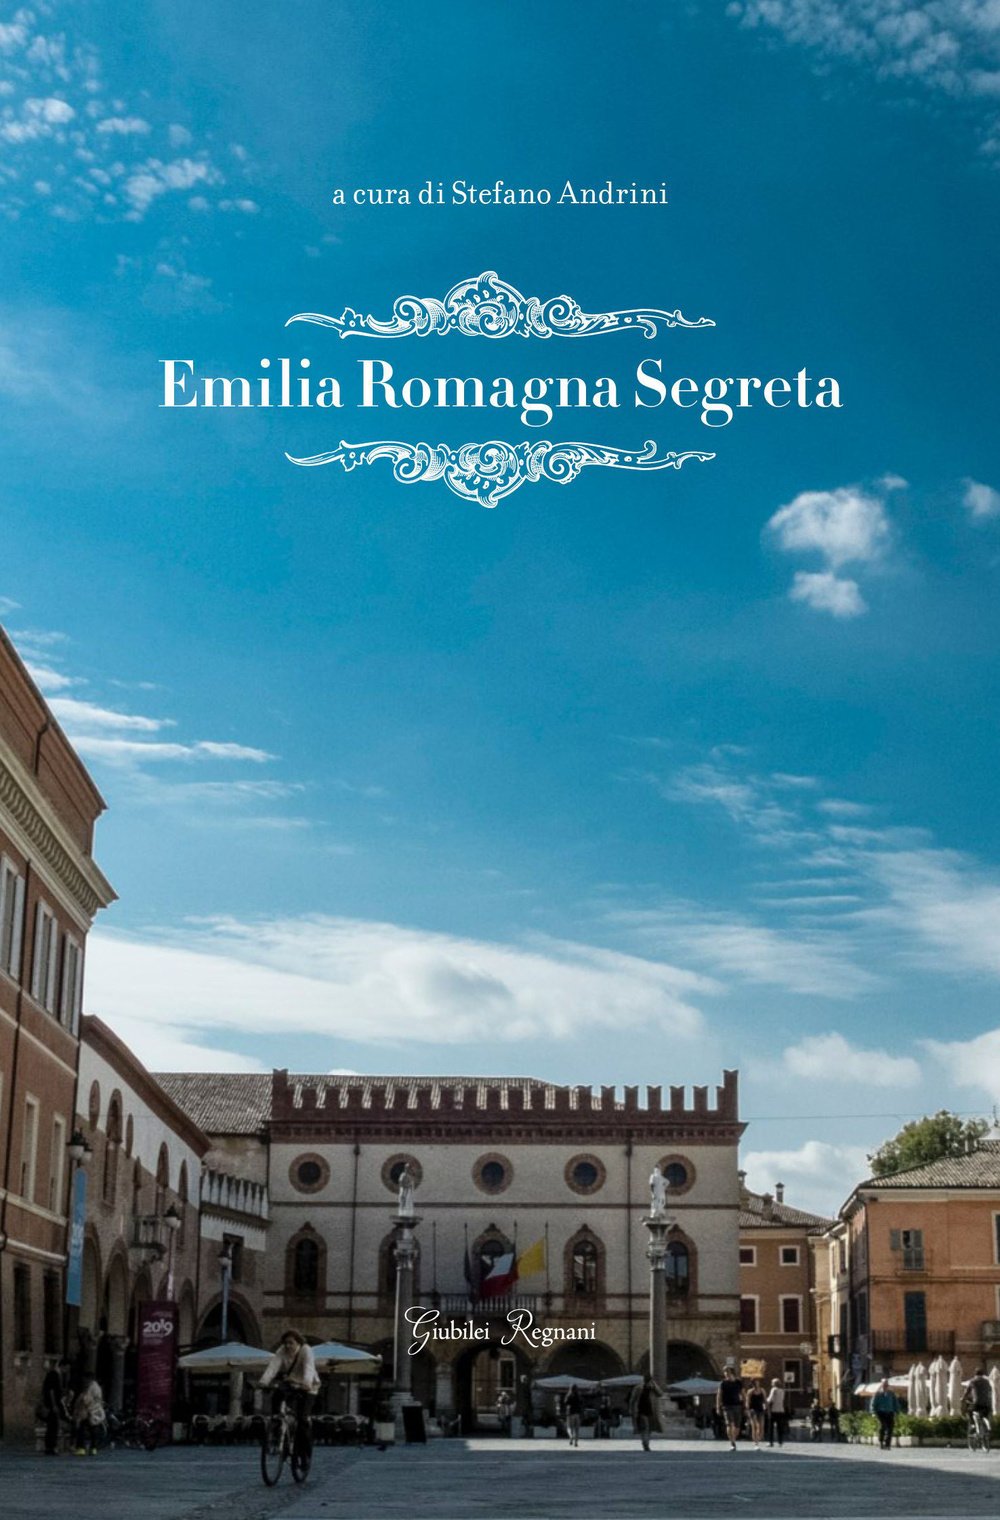 Libri Various - Emilia Romagna Segreta NUOVO SIGILLATO, EDIZIONE DEL 13/03/2015 SUBITO DISPONIBILE